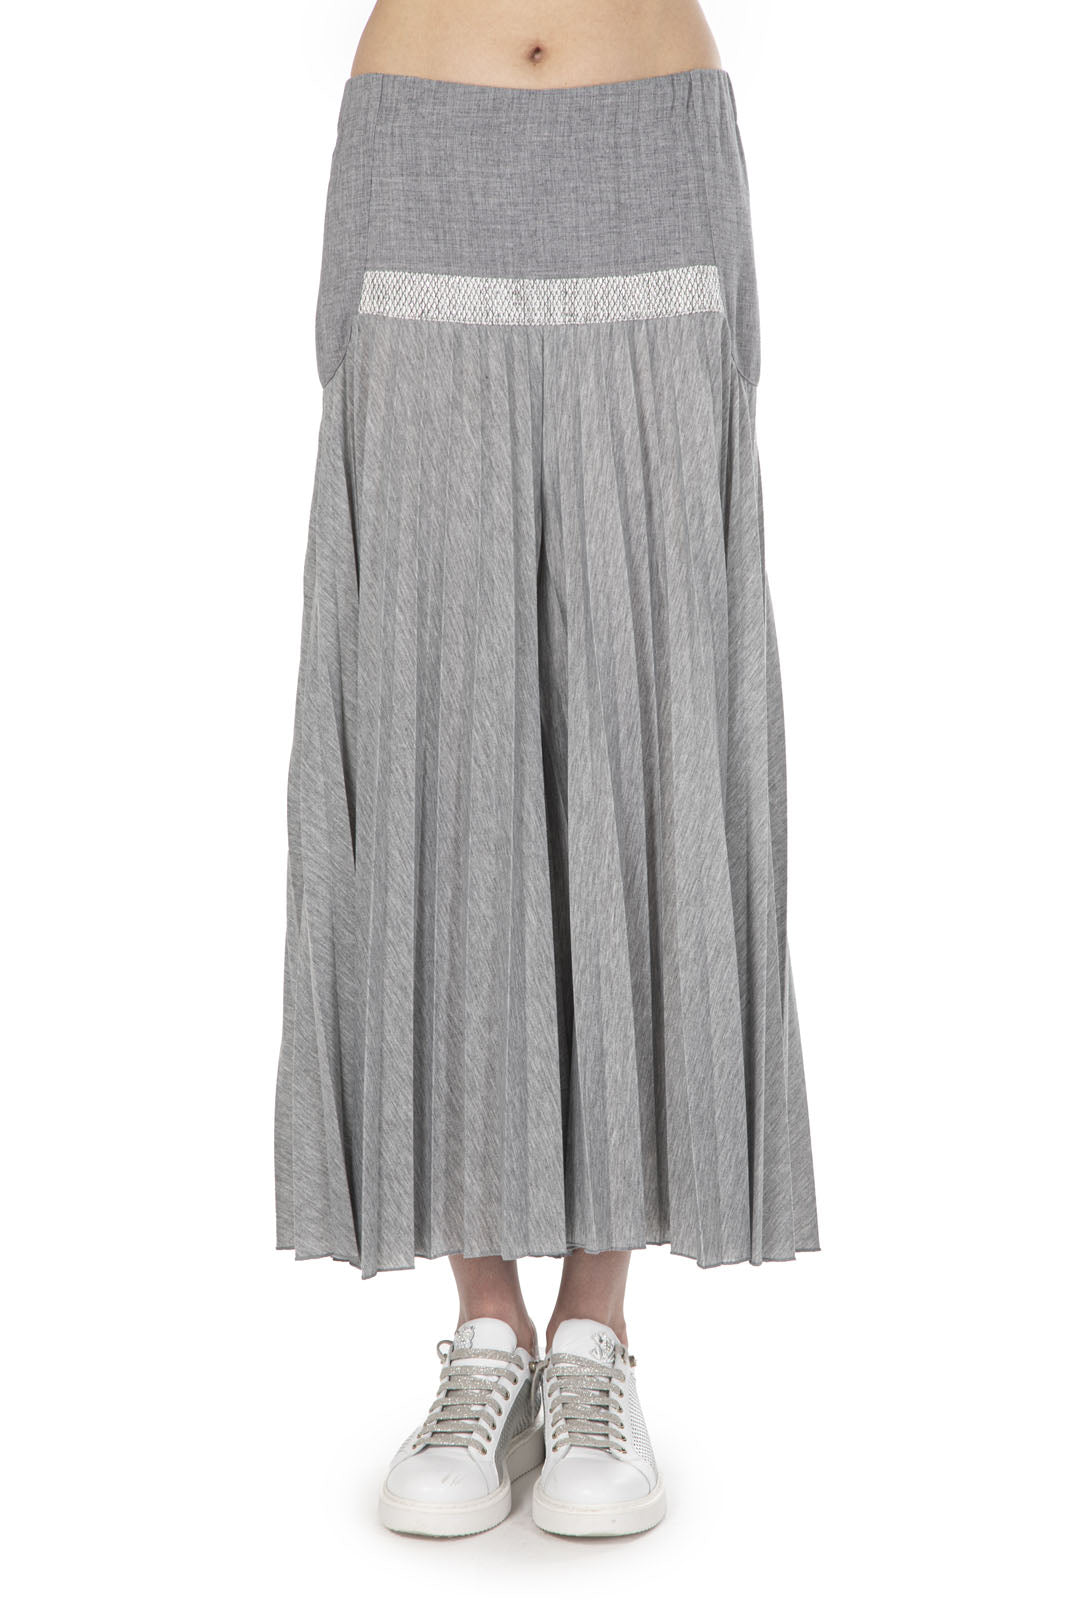 Elisa Cavaletti - Grey Midi Skirt